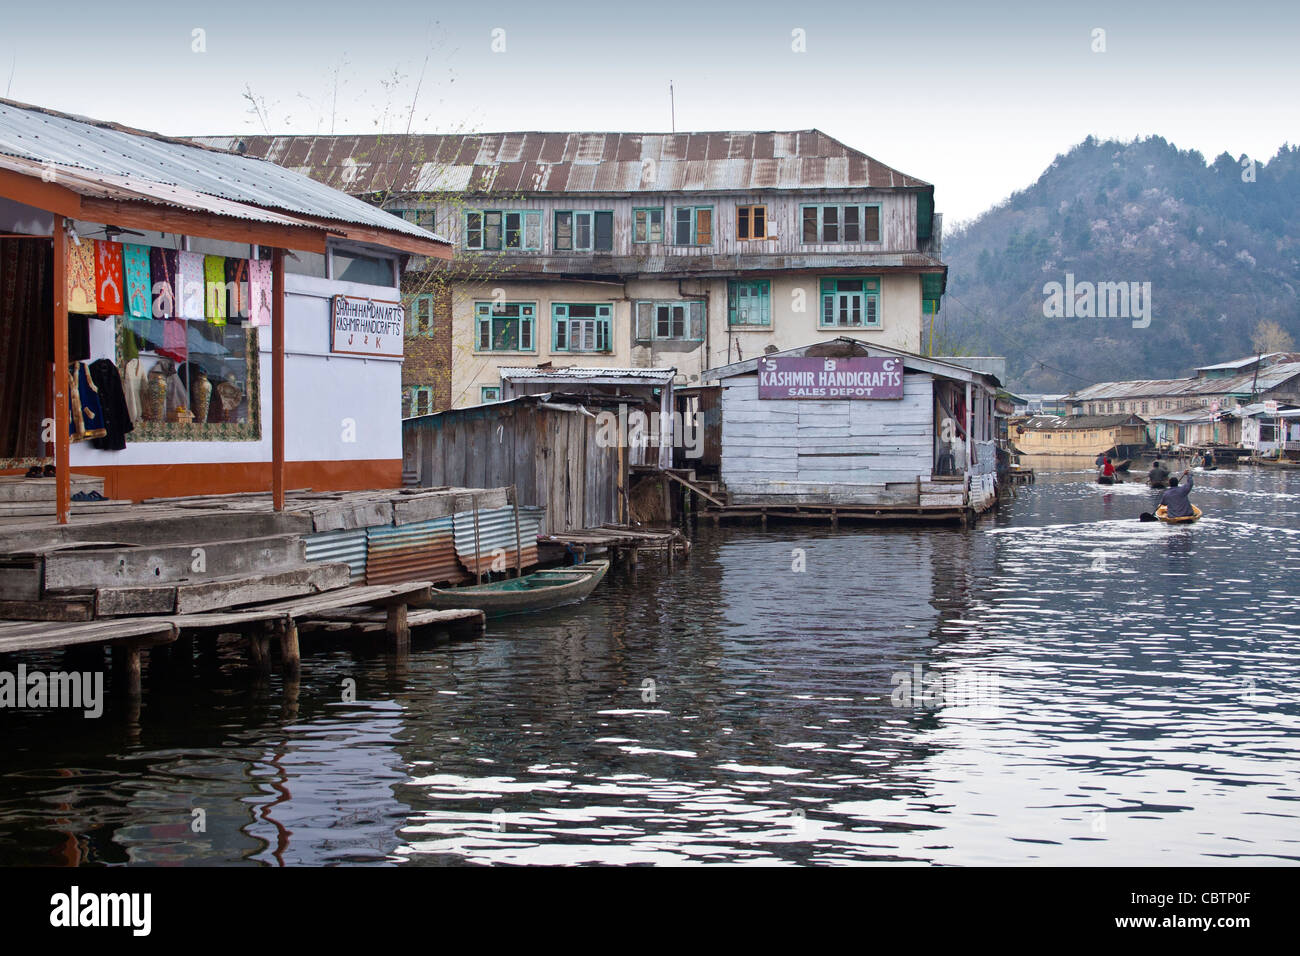 Dal lago di mercato galleggiante Foto Stock